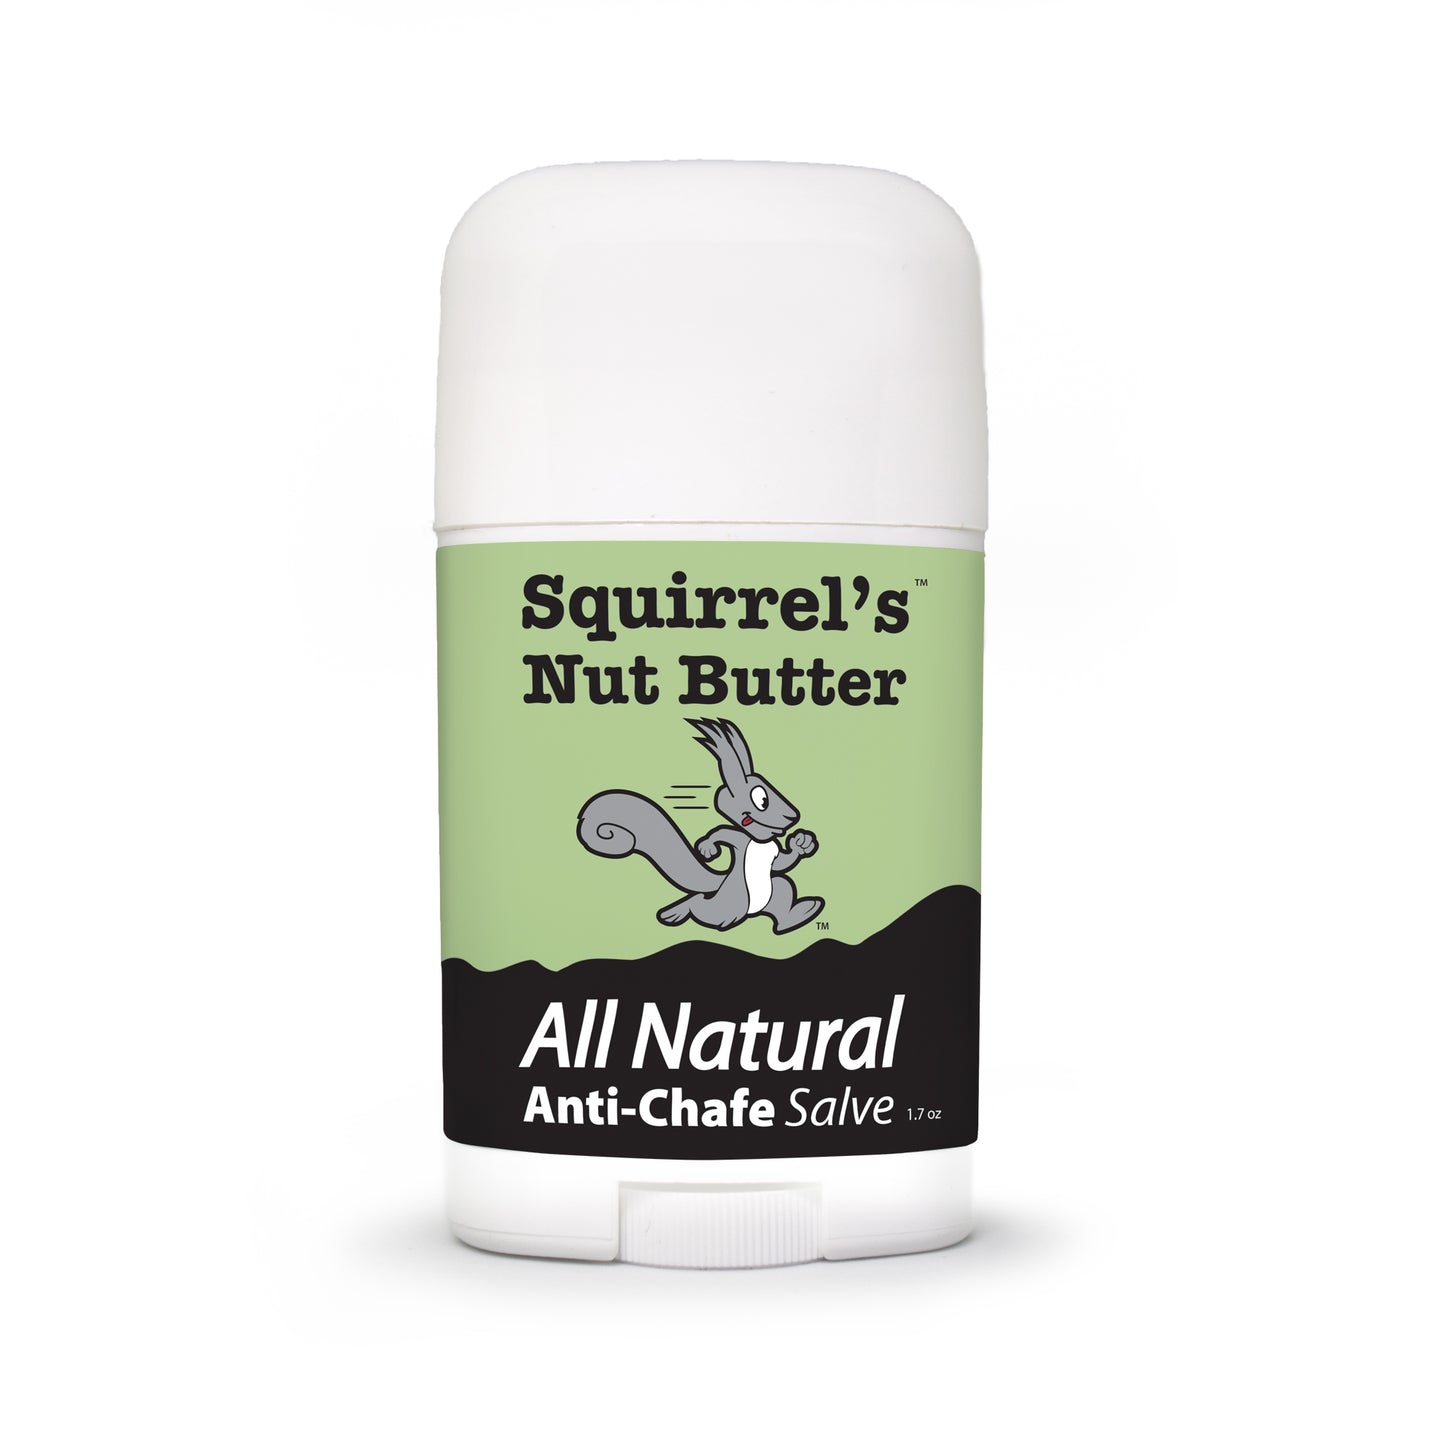 Squirrel's Nut Butter Stick - 1.7oz